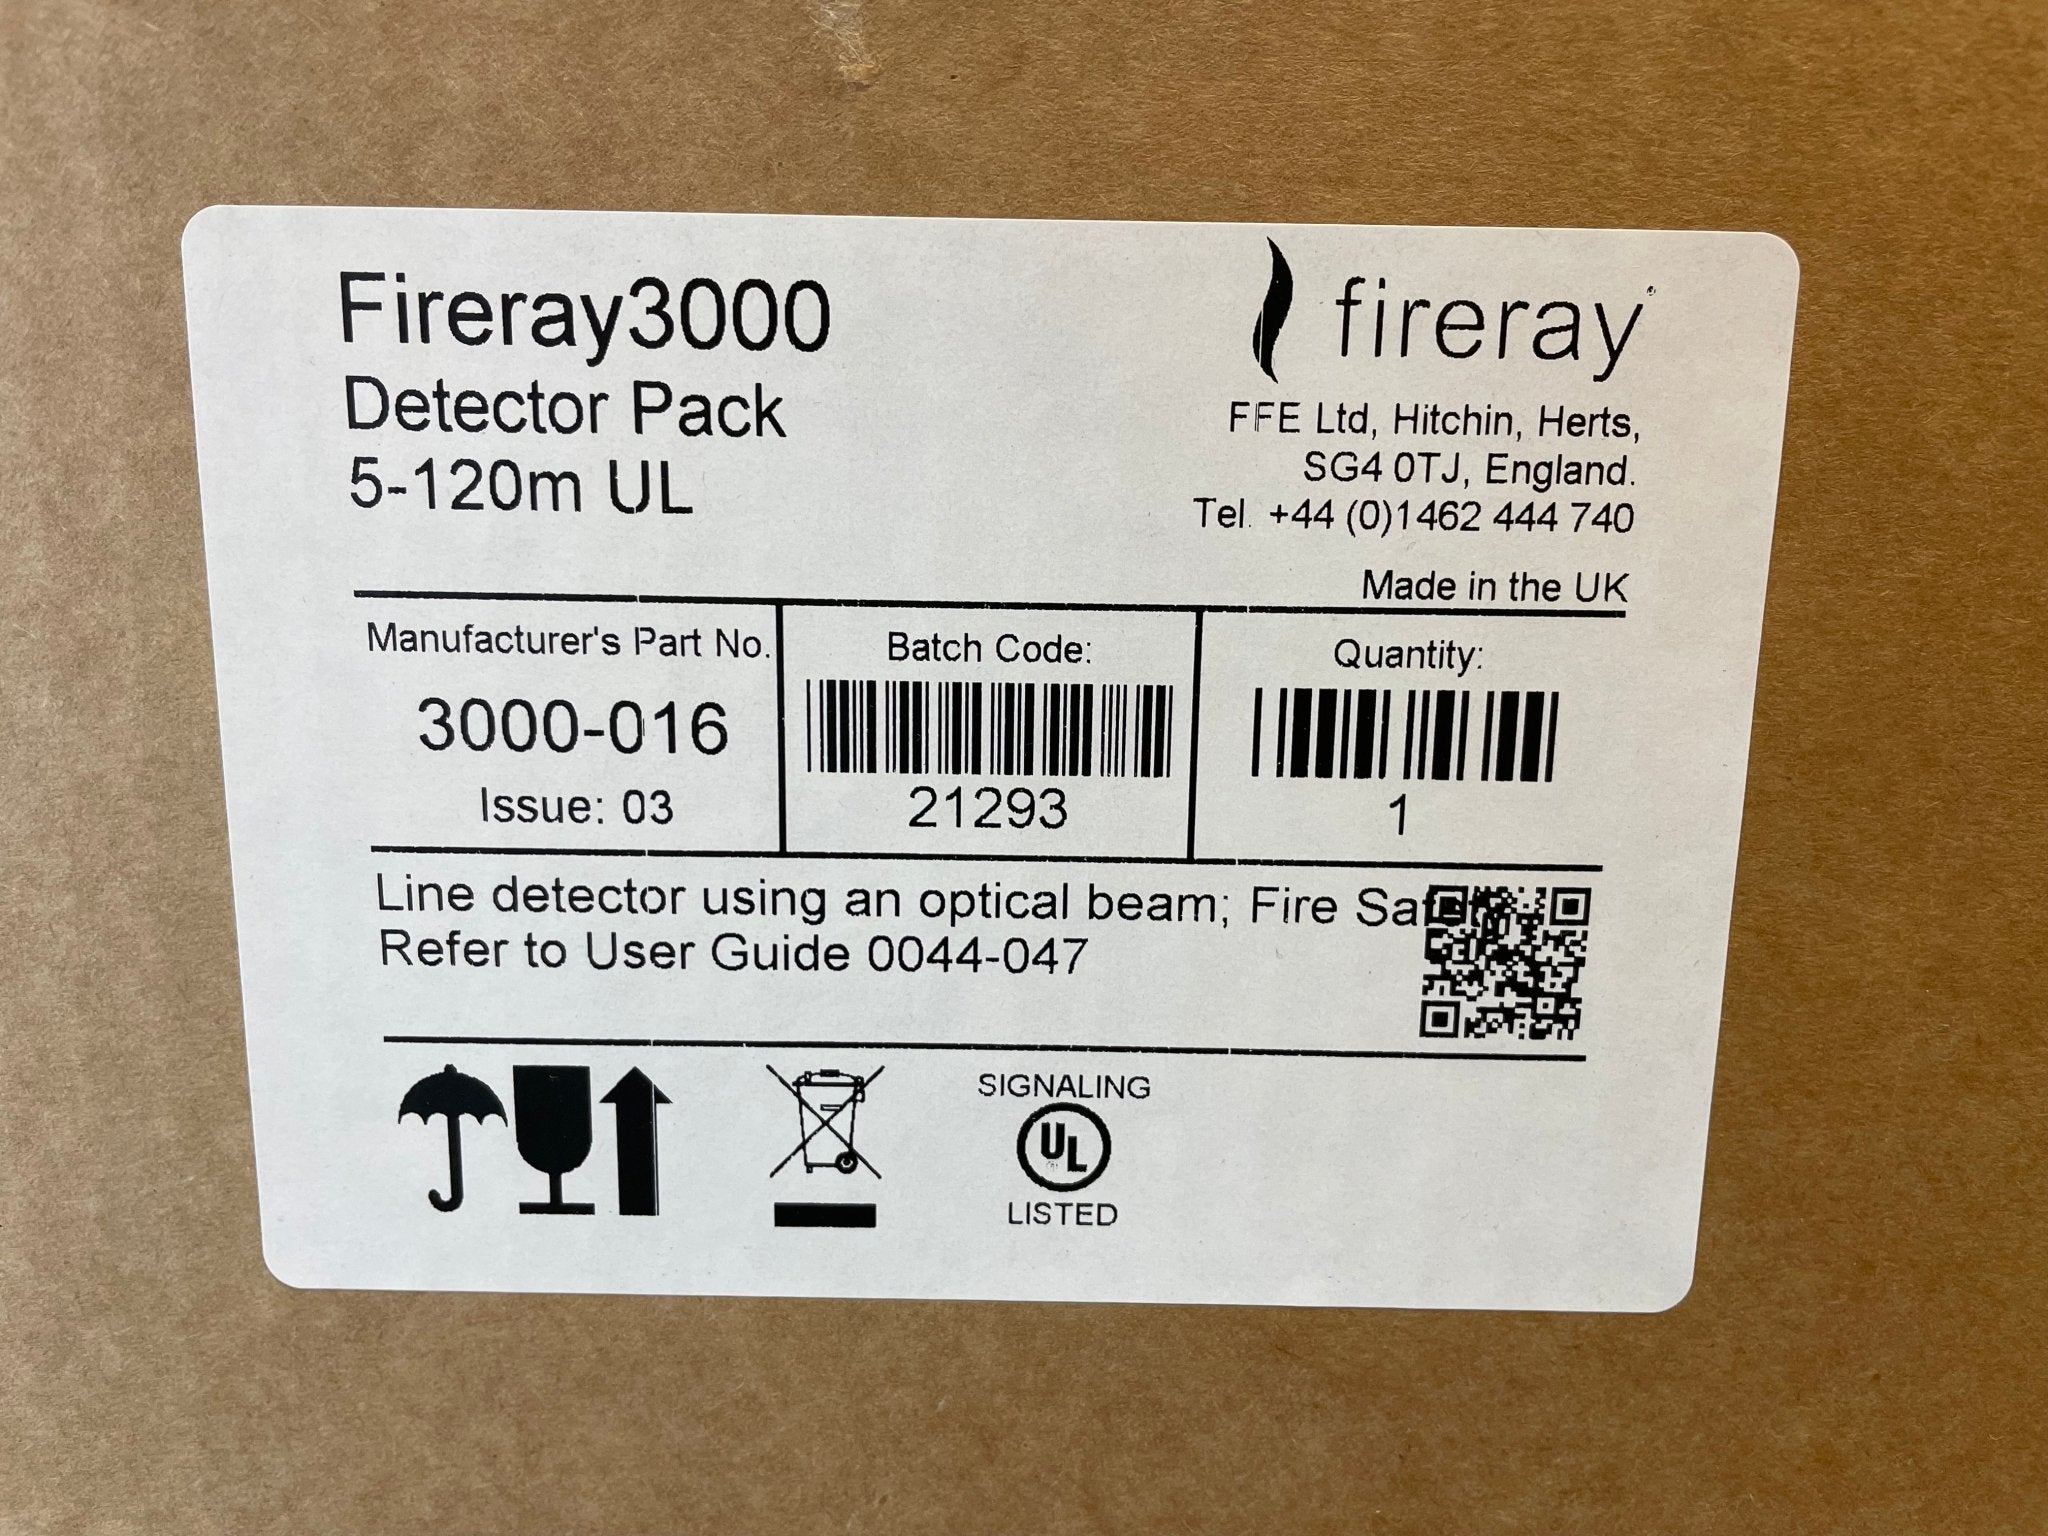 Fireray 3000-016 - The Fire Alarm Supplier